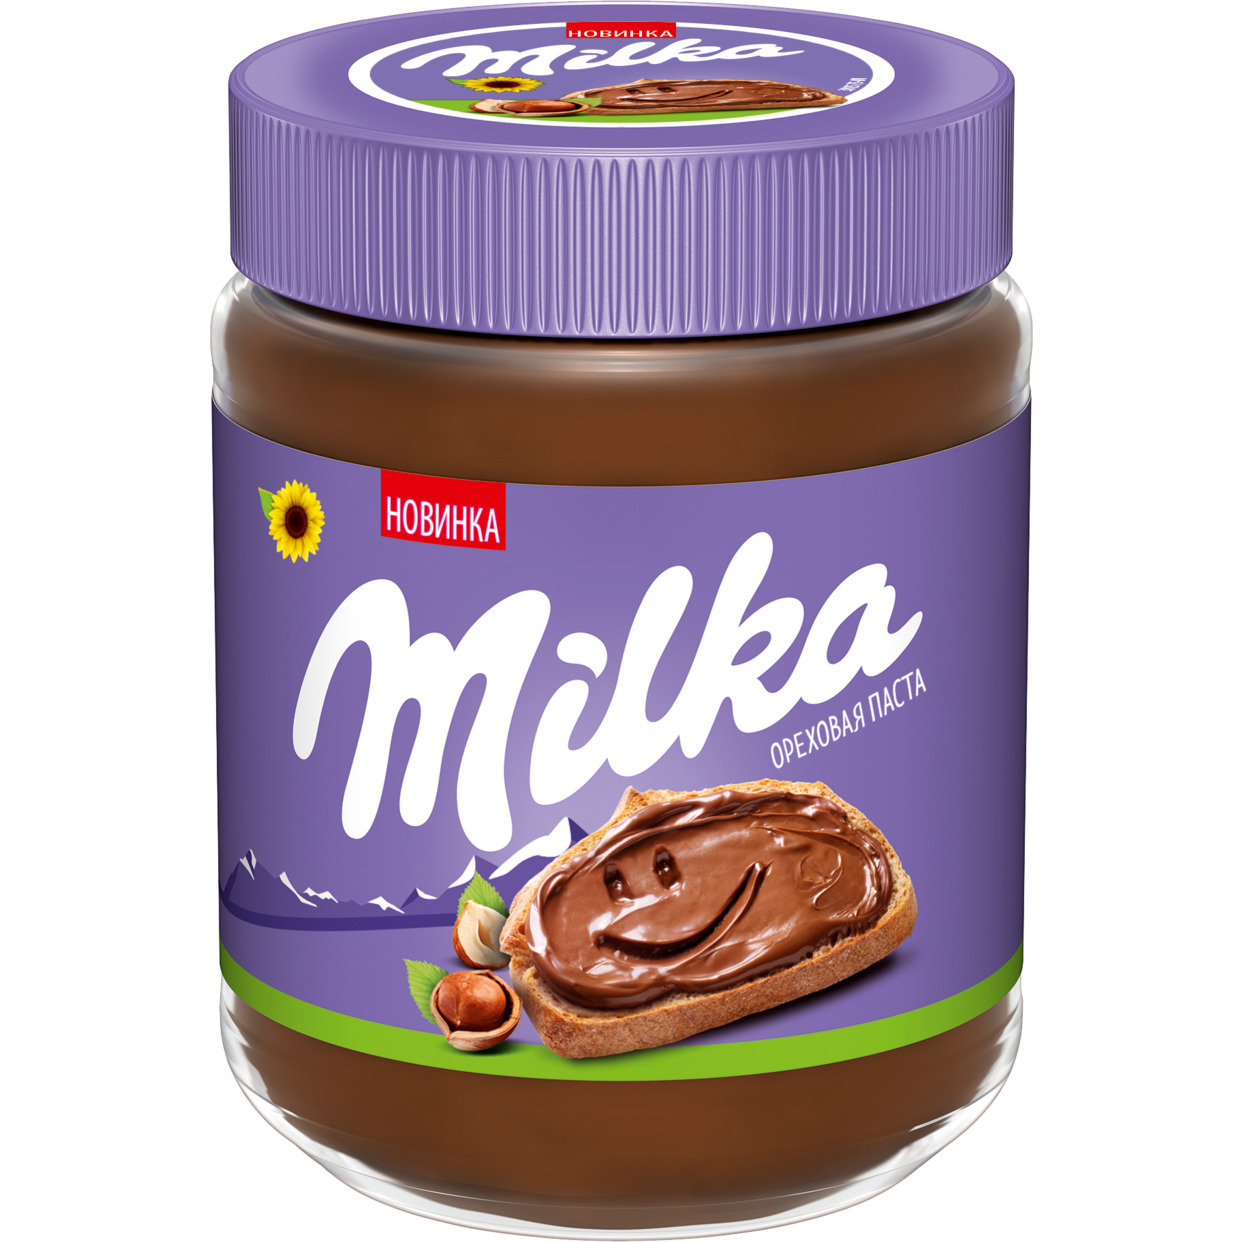 Паста ореховая Milka с добавлением какао, 350г по акции в Пятерочке